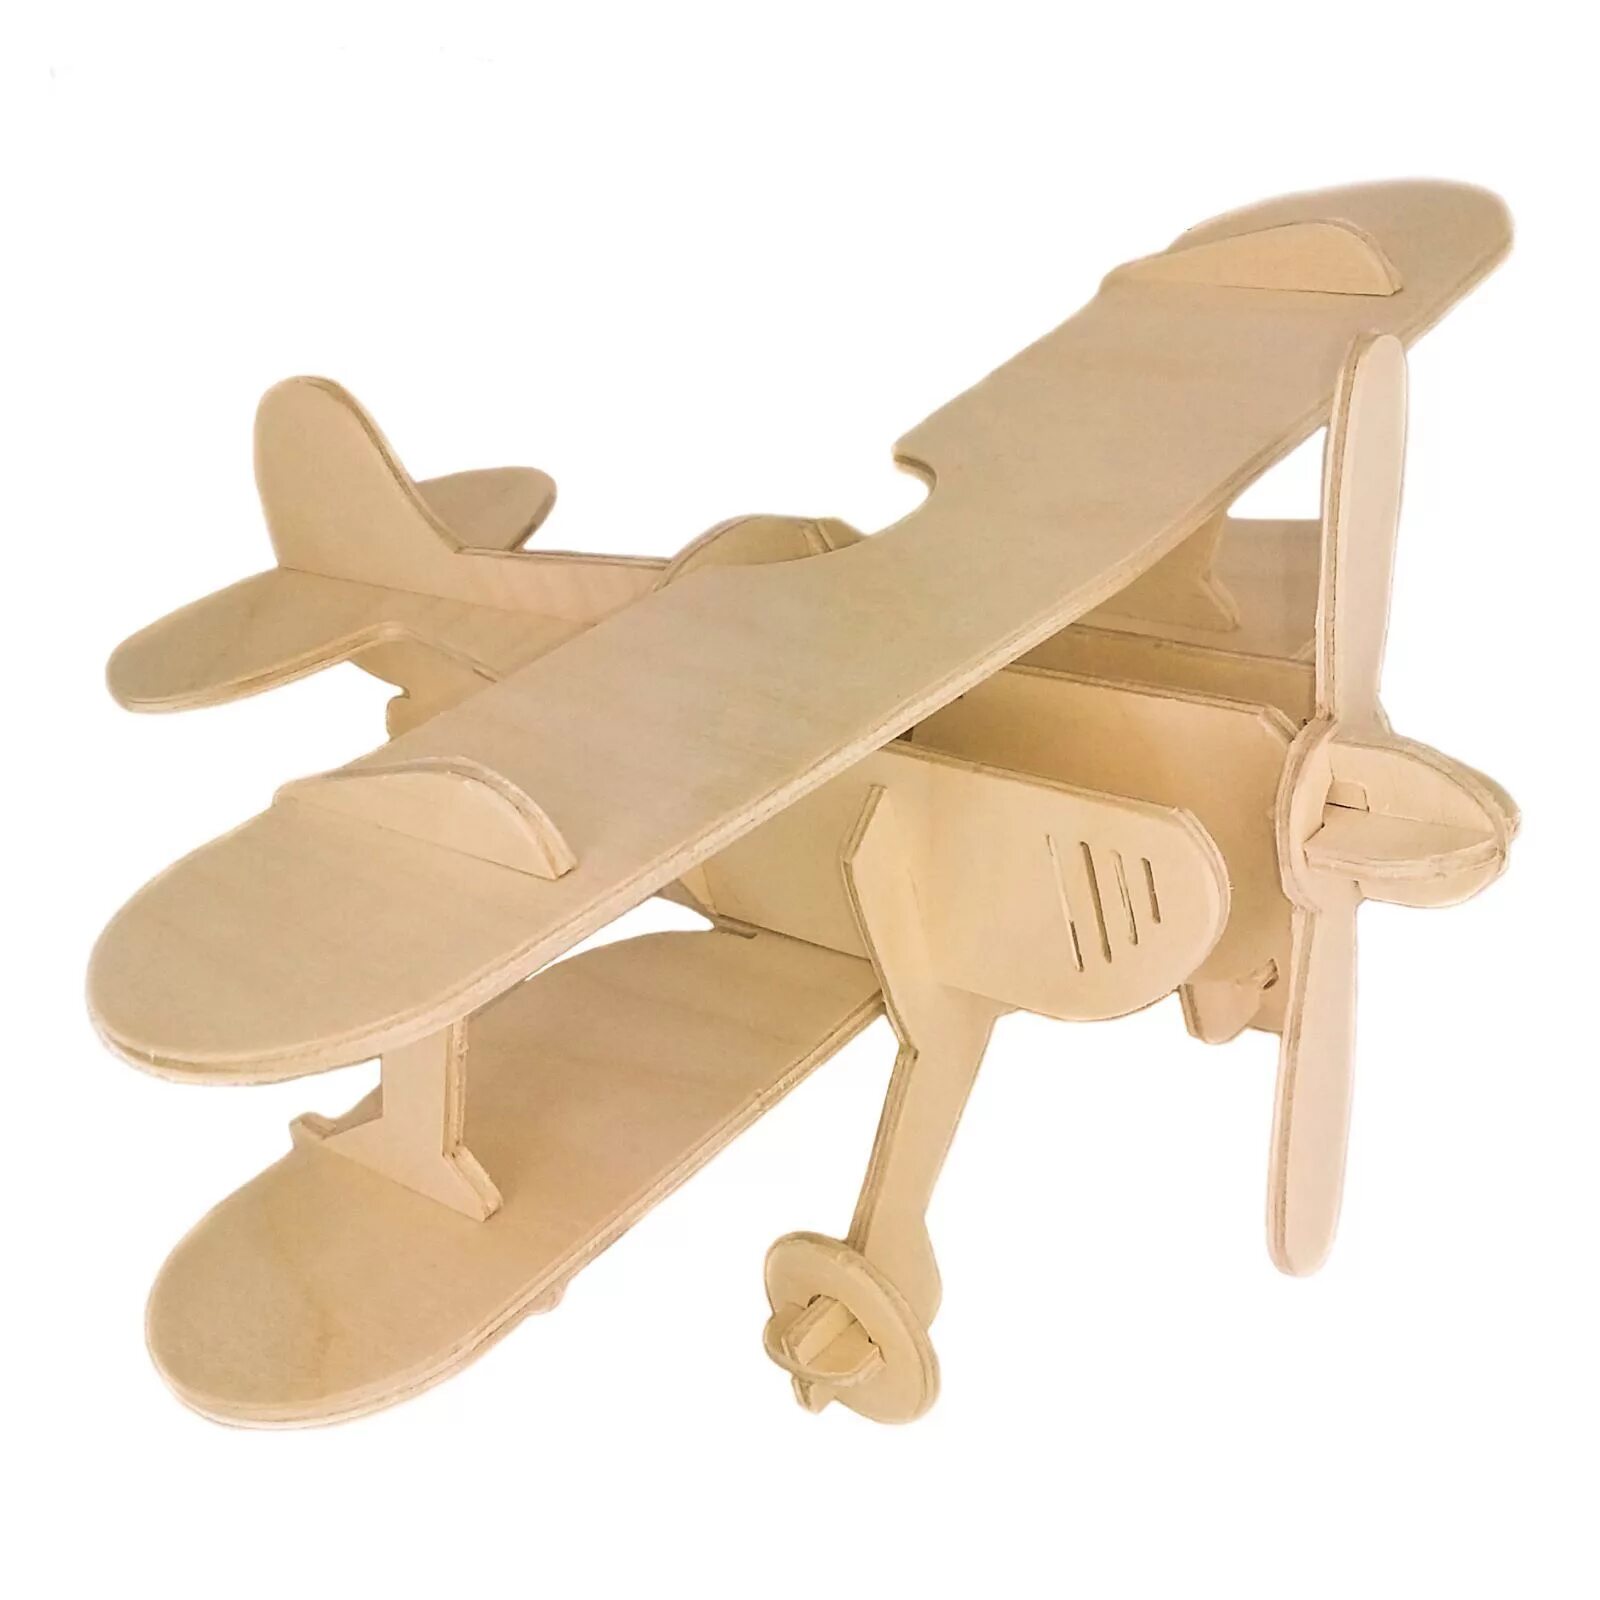 Конструктор модель самолета. Альтаир деревянный конструктор. Деревянный конструктор самолет. Сборная деревянная модель самолет. Модель самолёта из фанеры.